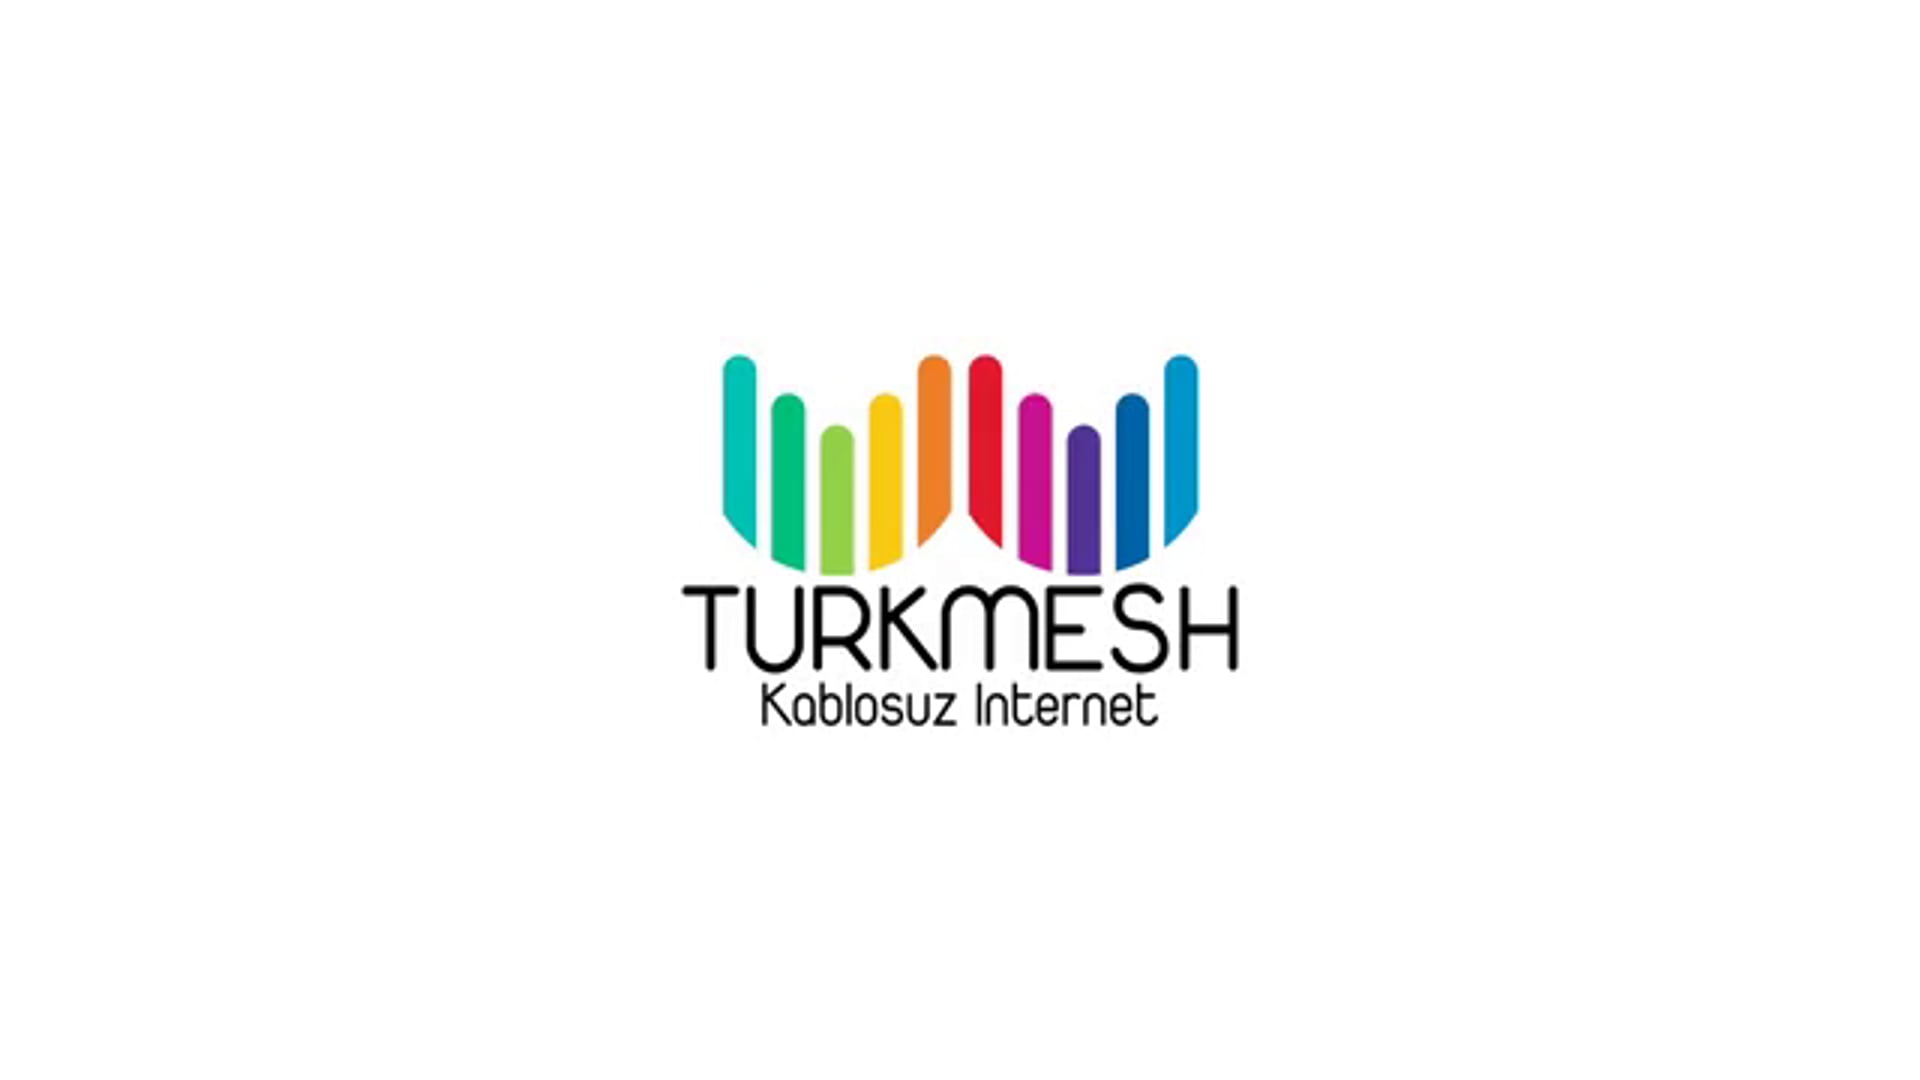 Turkmesh Tv Commercial